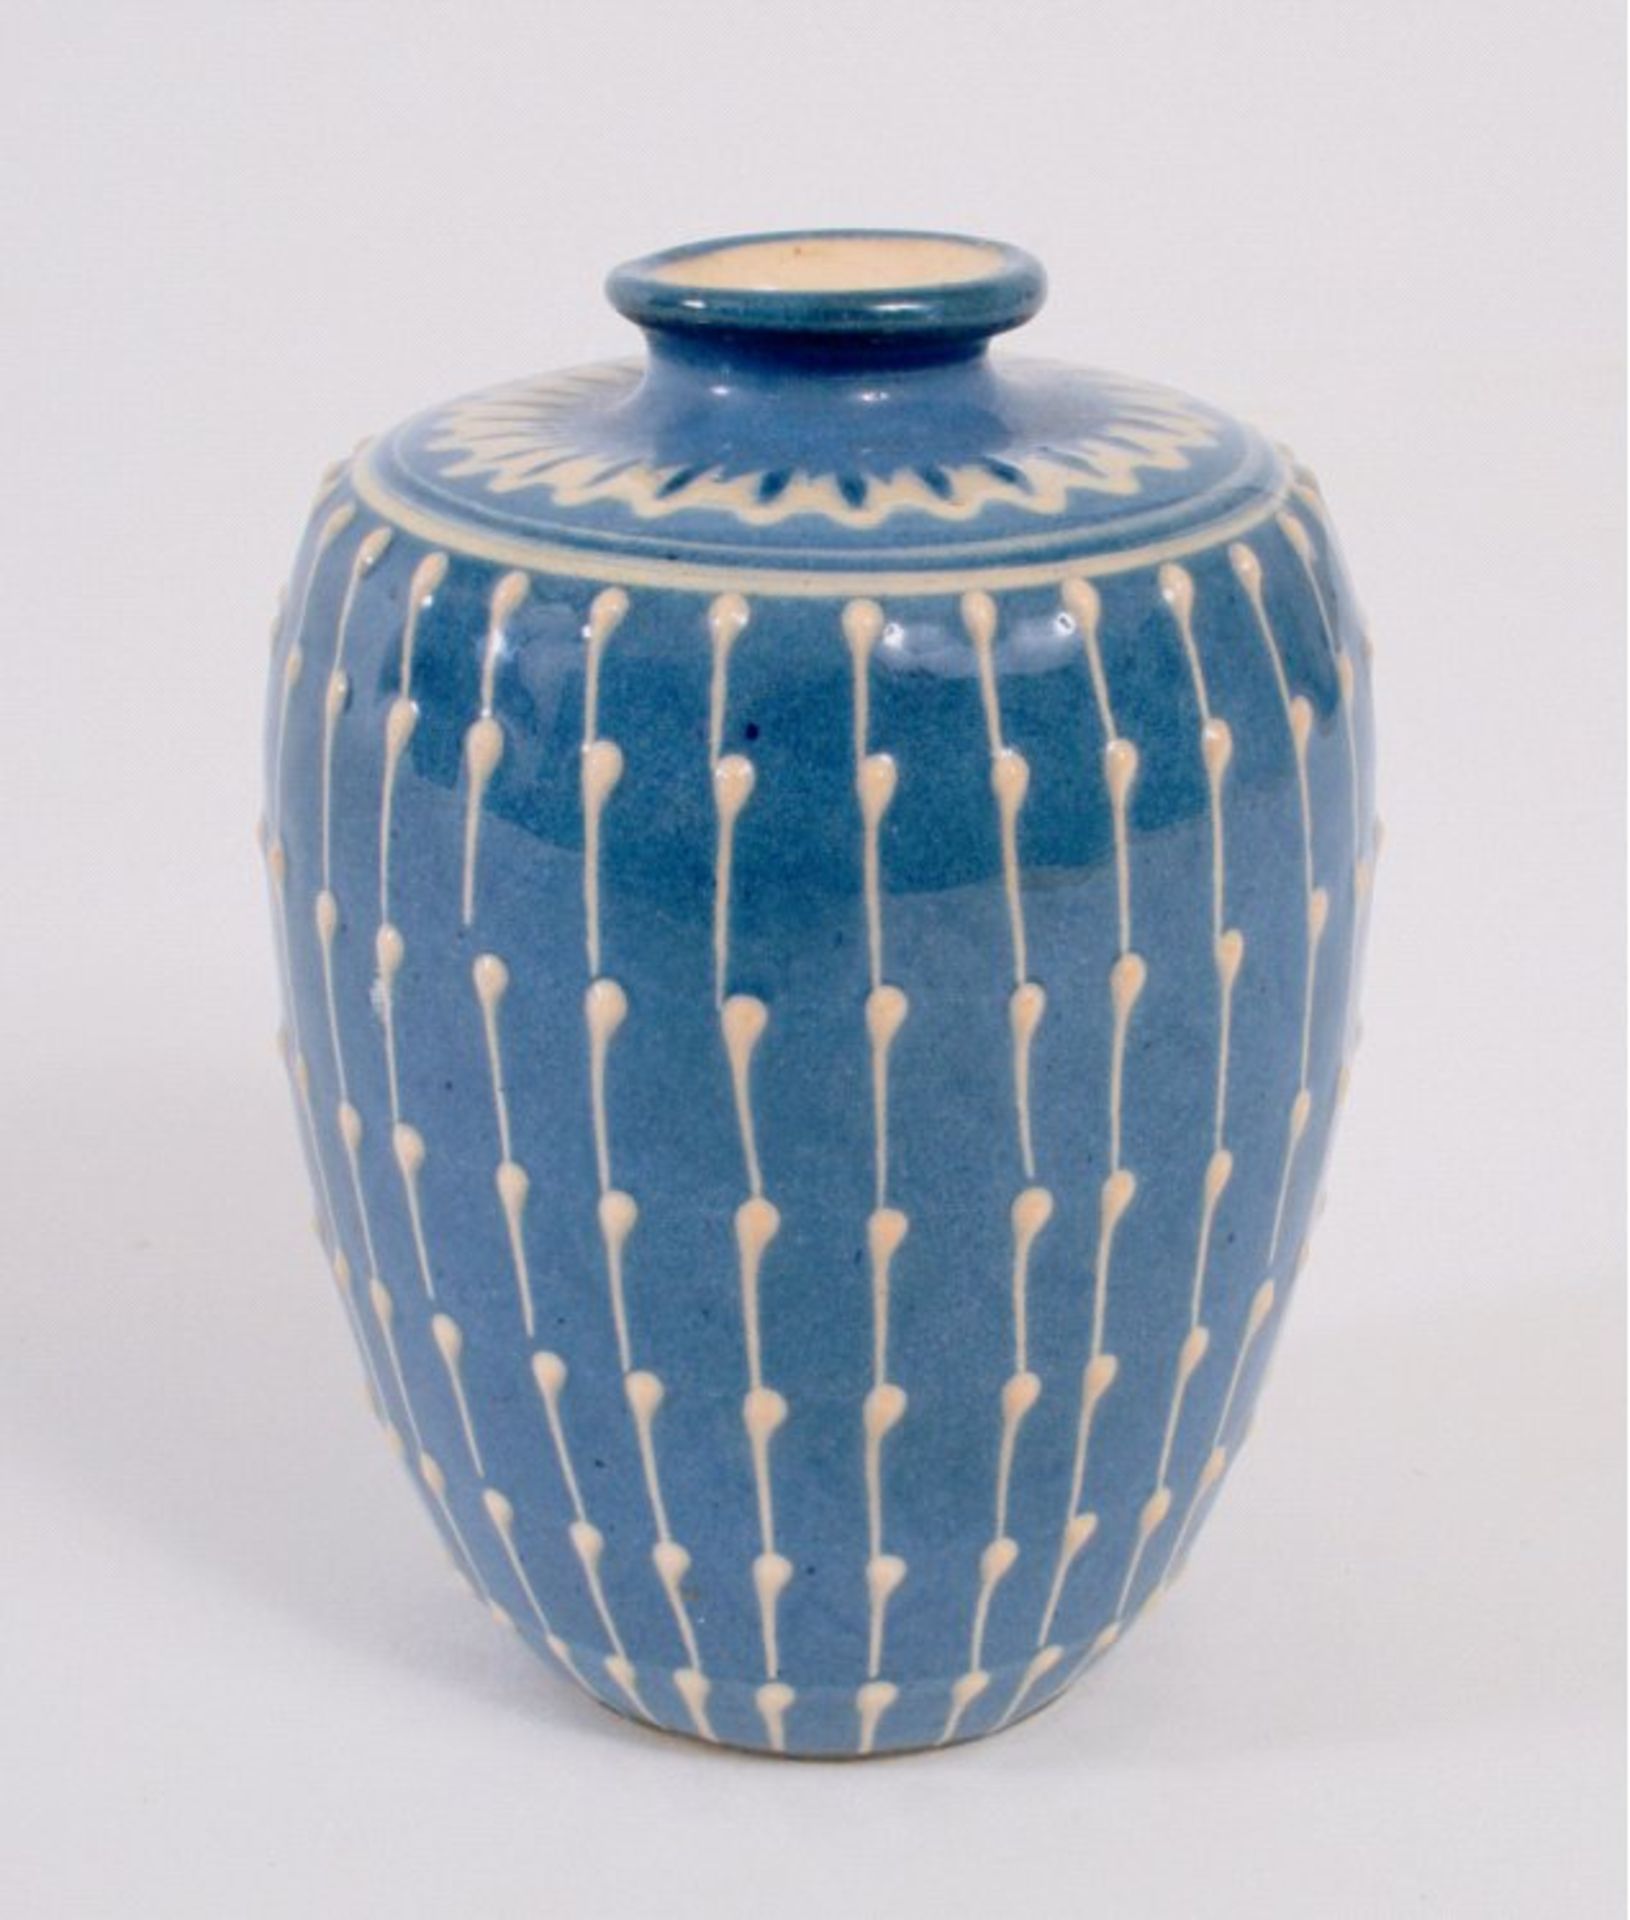 Keramikvase um 1900blaue Glasur mit weißem reliefiertem Dekor, sign., H. ca. 10cm.

Dieses Los